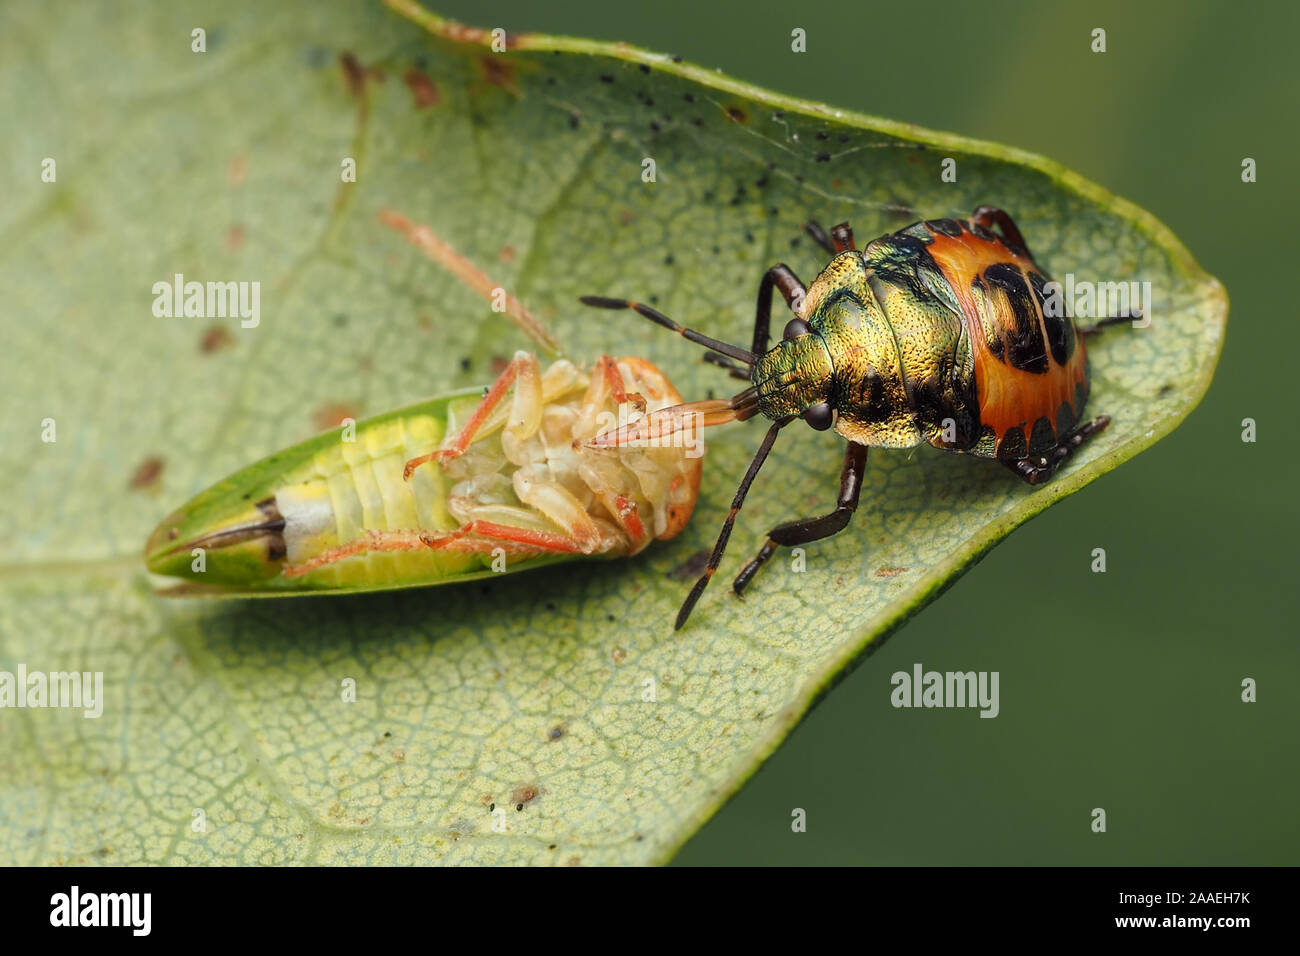 Nymphe Bronze Shieldbug Iassus se nourrissant de proies à la cicadelle lanio. Tipperary, Irlande Banque D'Images